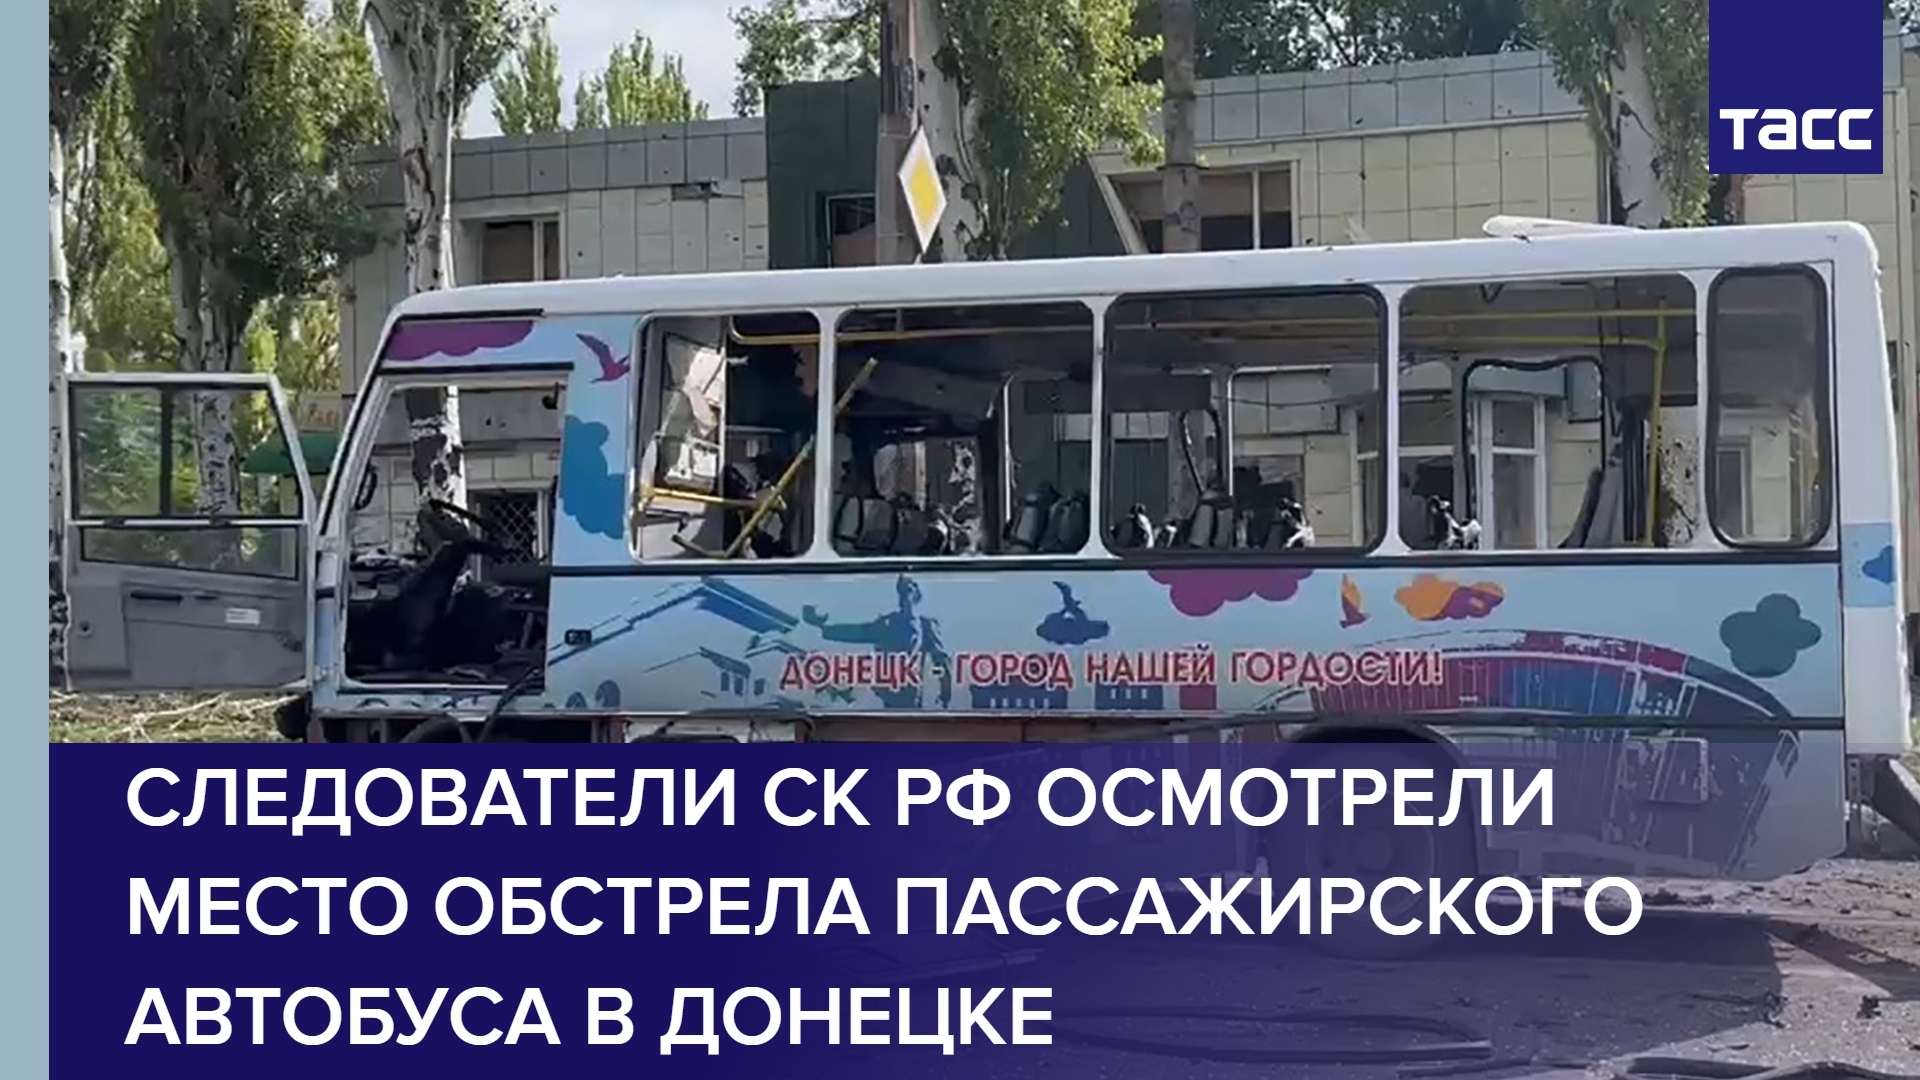 Следователи СК РФ осмотрели место обстрела пассажирского автобуса в Донецке